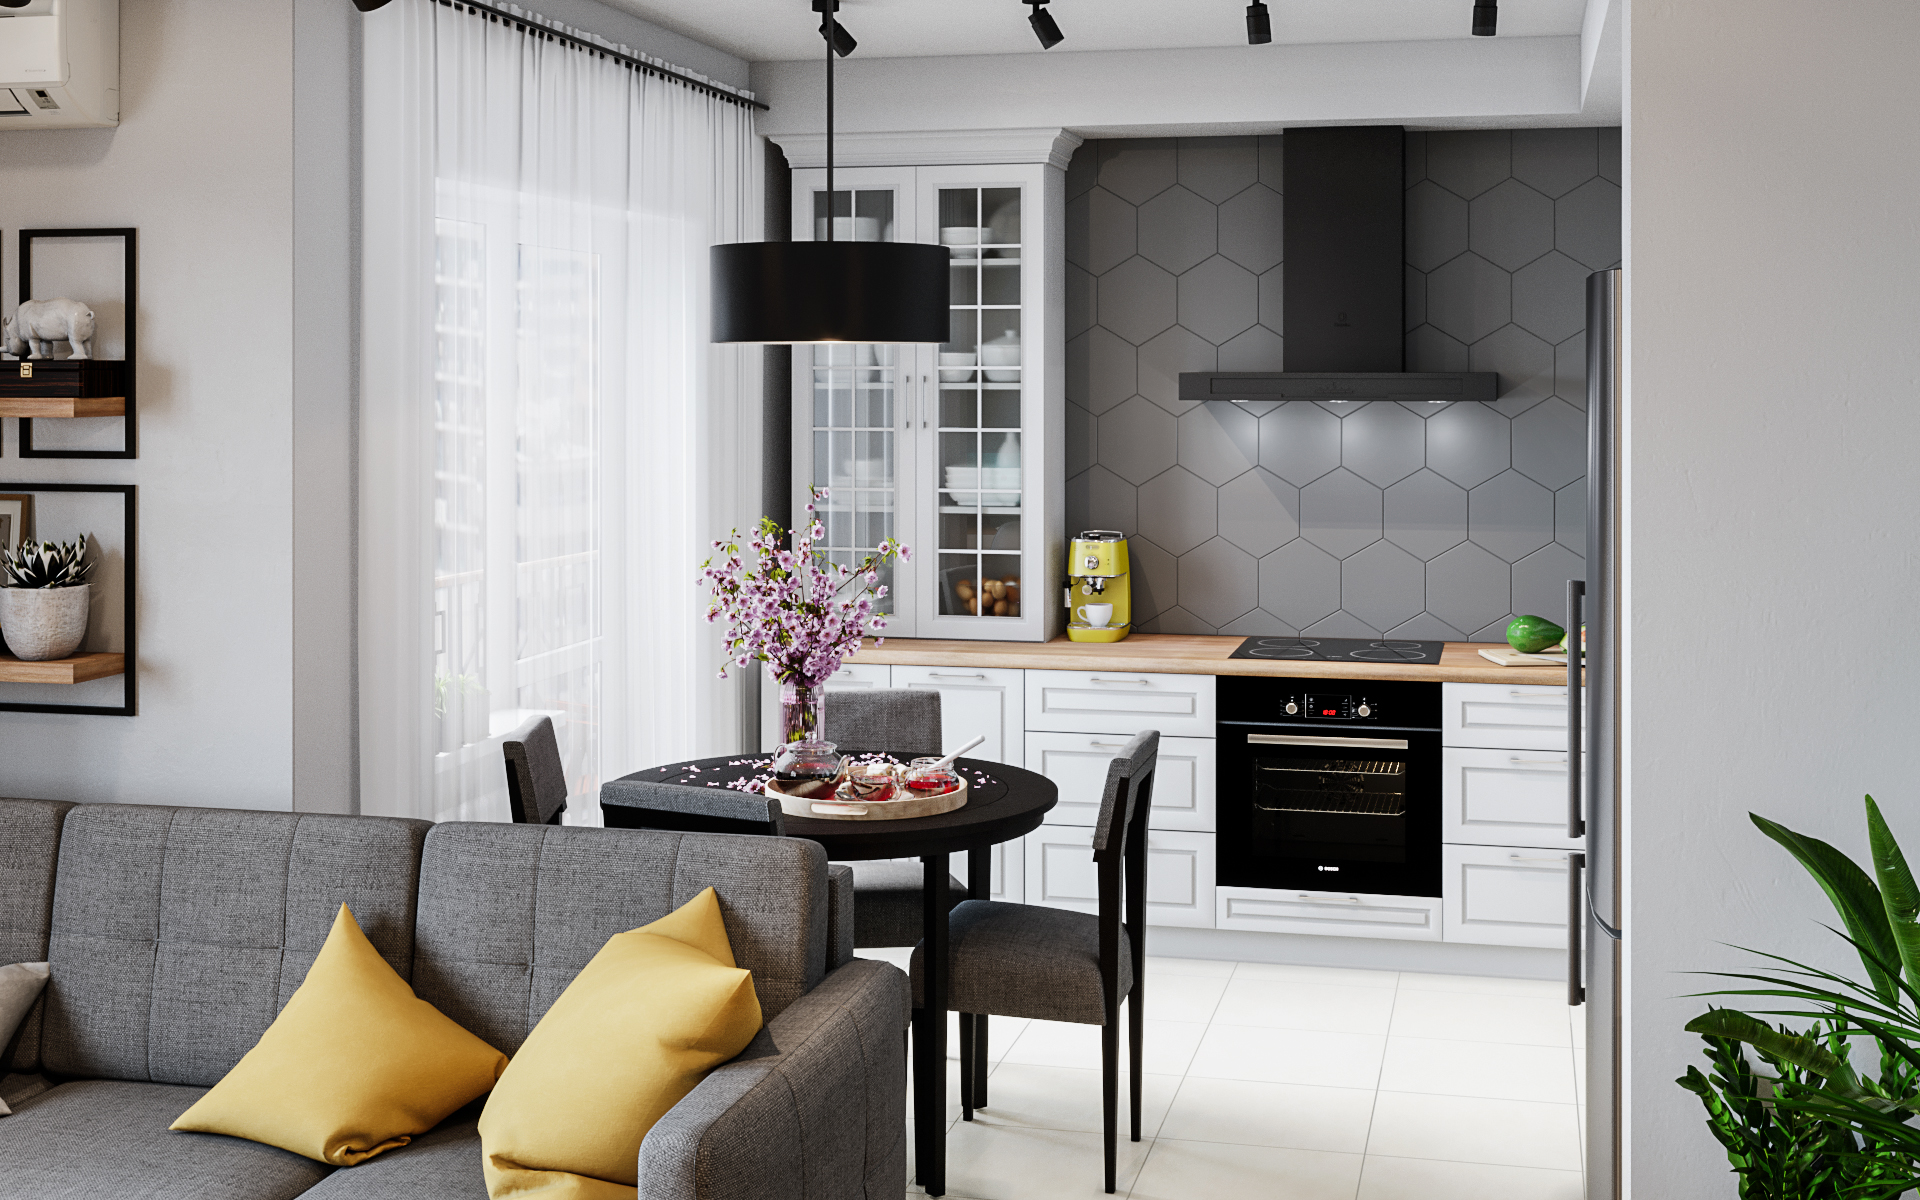 Кухня-гостиная в 3d max corona render изображение